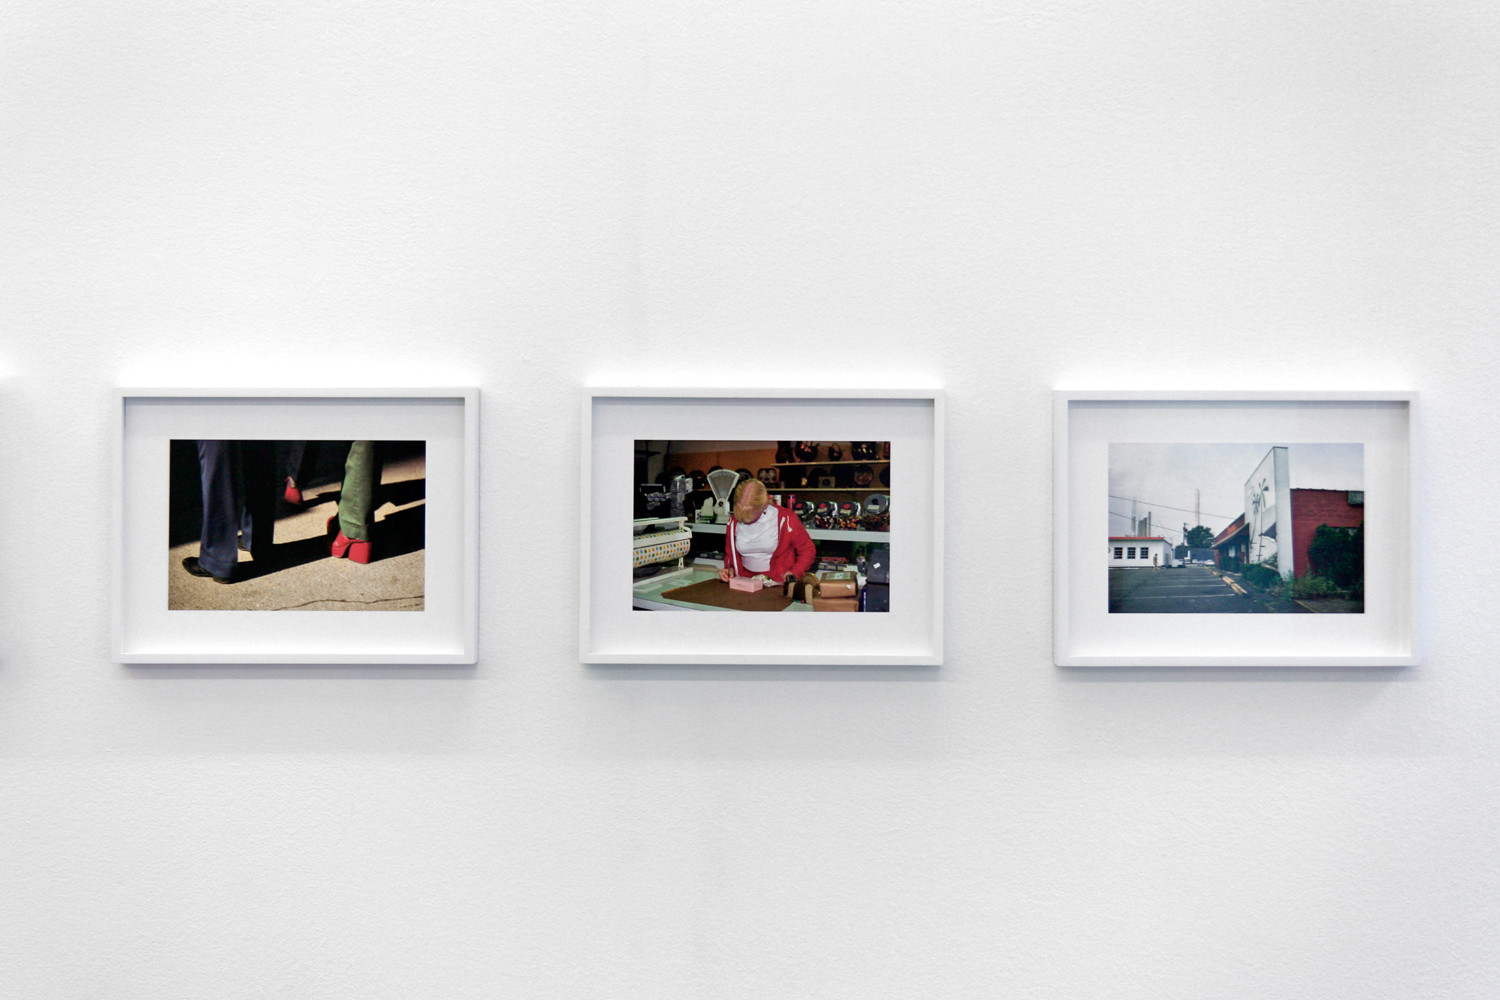 Joel Sternfeld, ‘First Pictures’, Installationsansicht, Buchmann Galerie, 2014